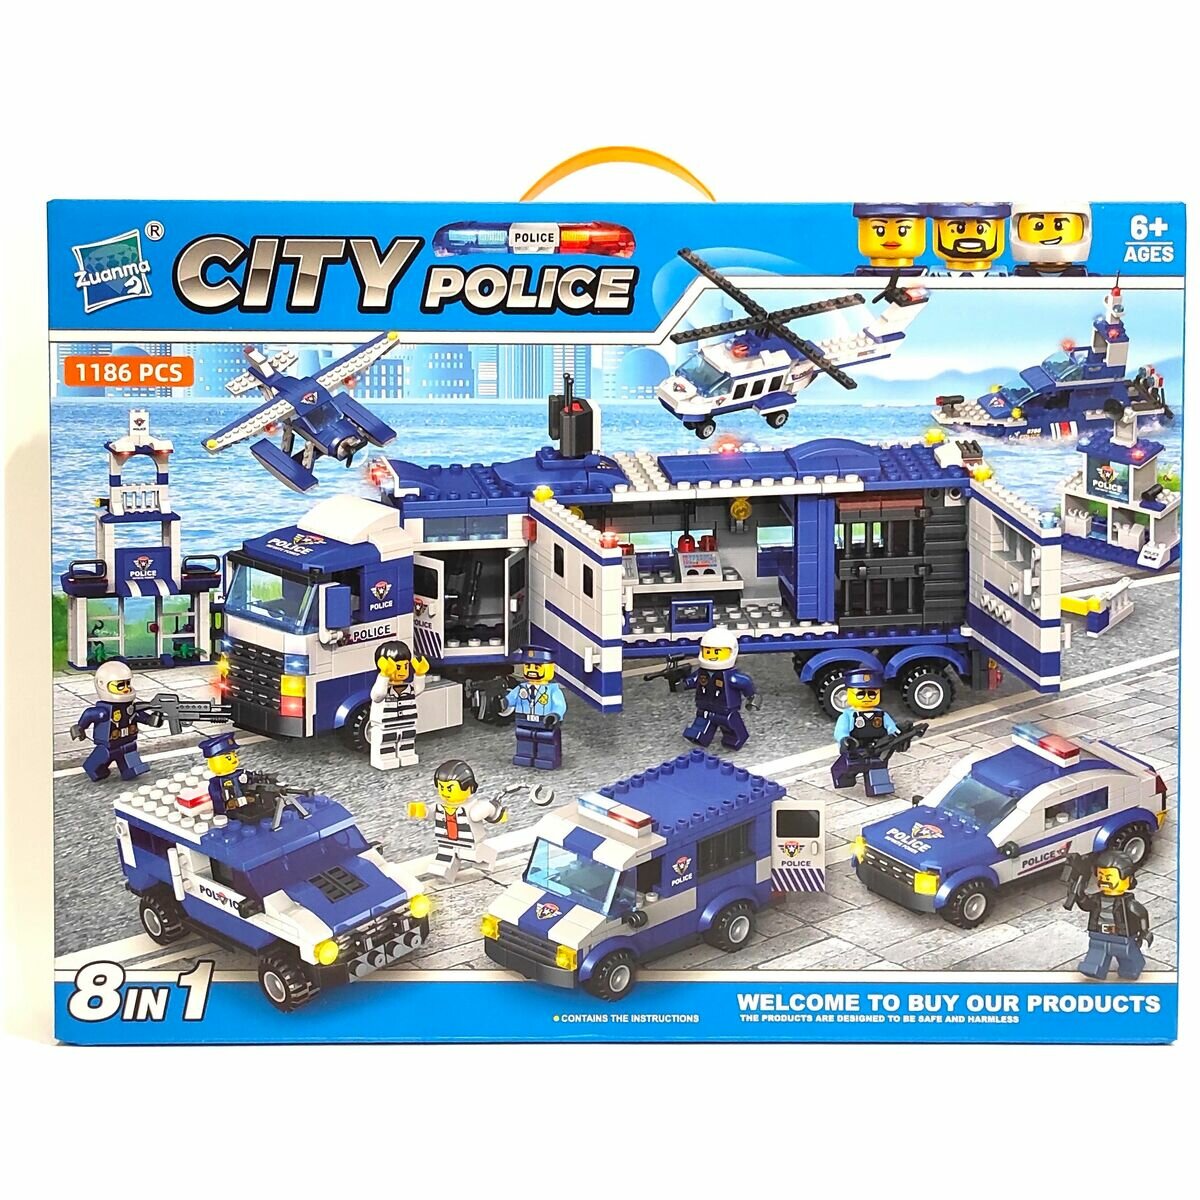 Конструктор Городская полиция Zuanma City Police 8 фигурок в 1 наборе 1186 деталей 6+